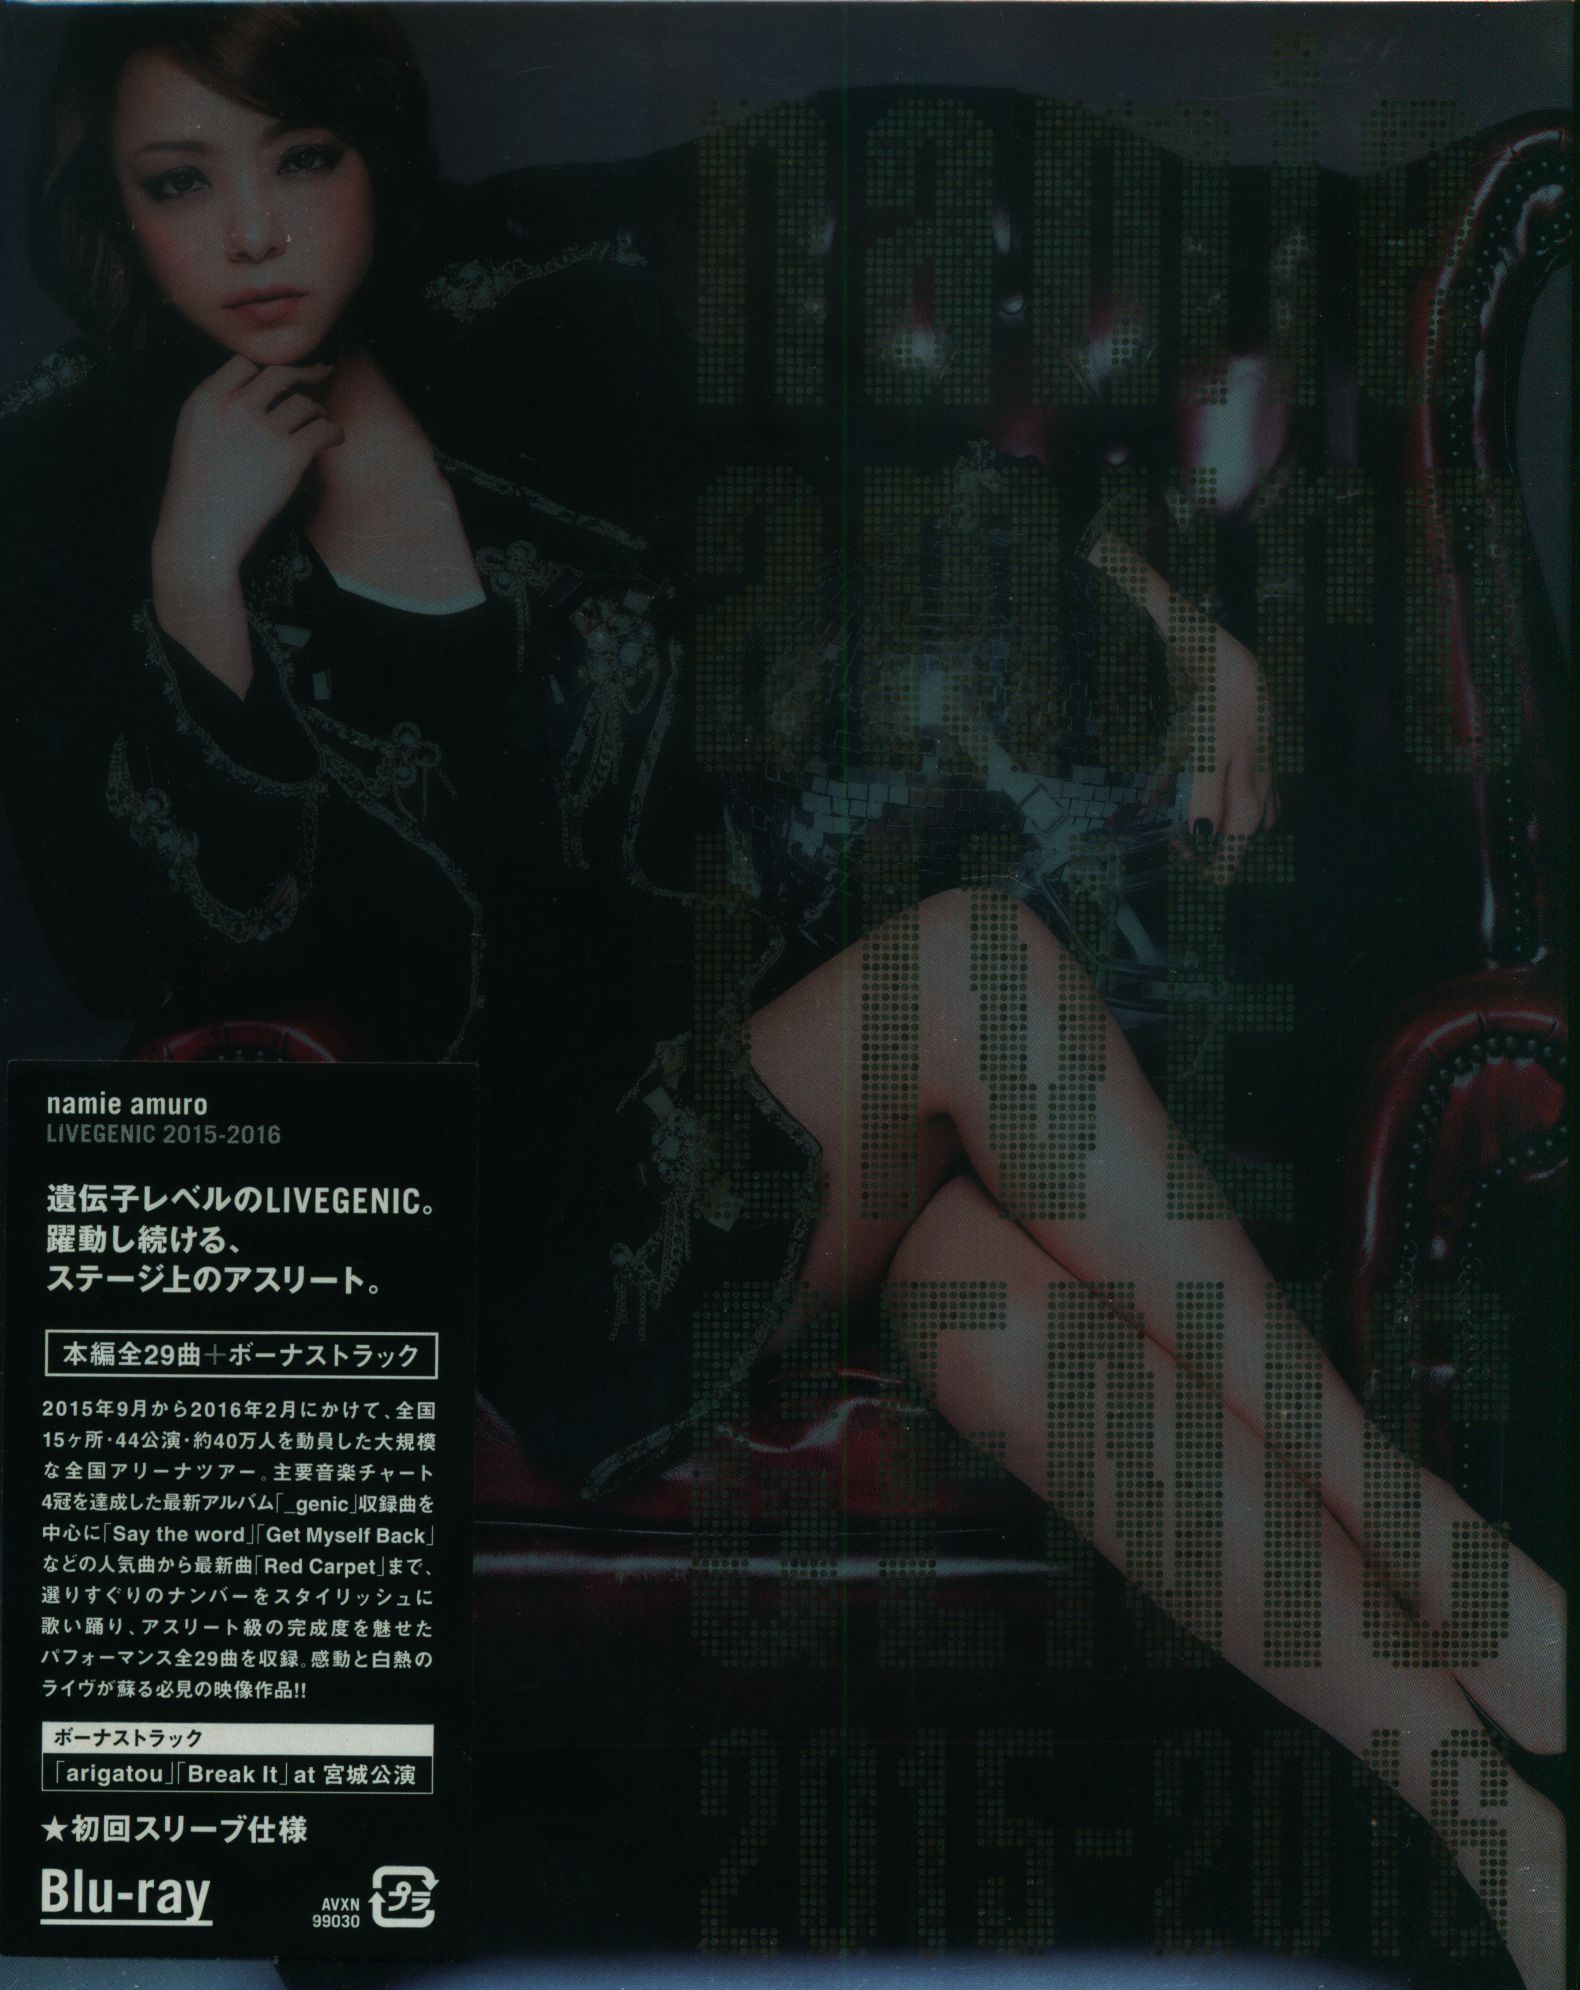 安室奈美恵 live genic 2015  blu-ray